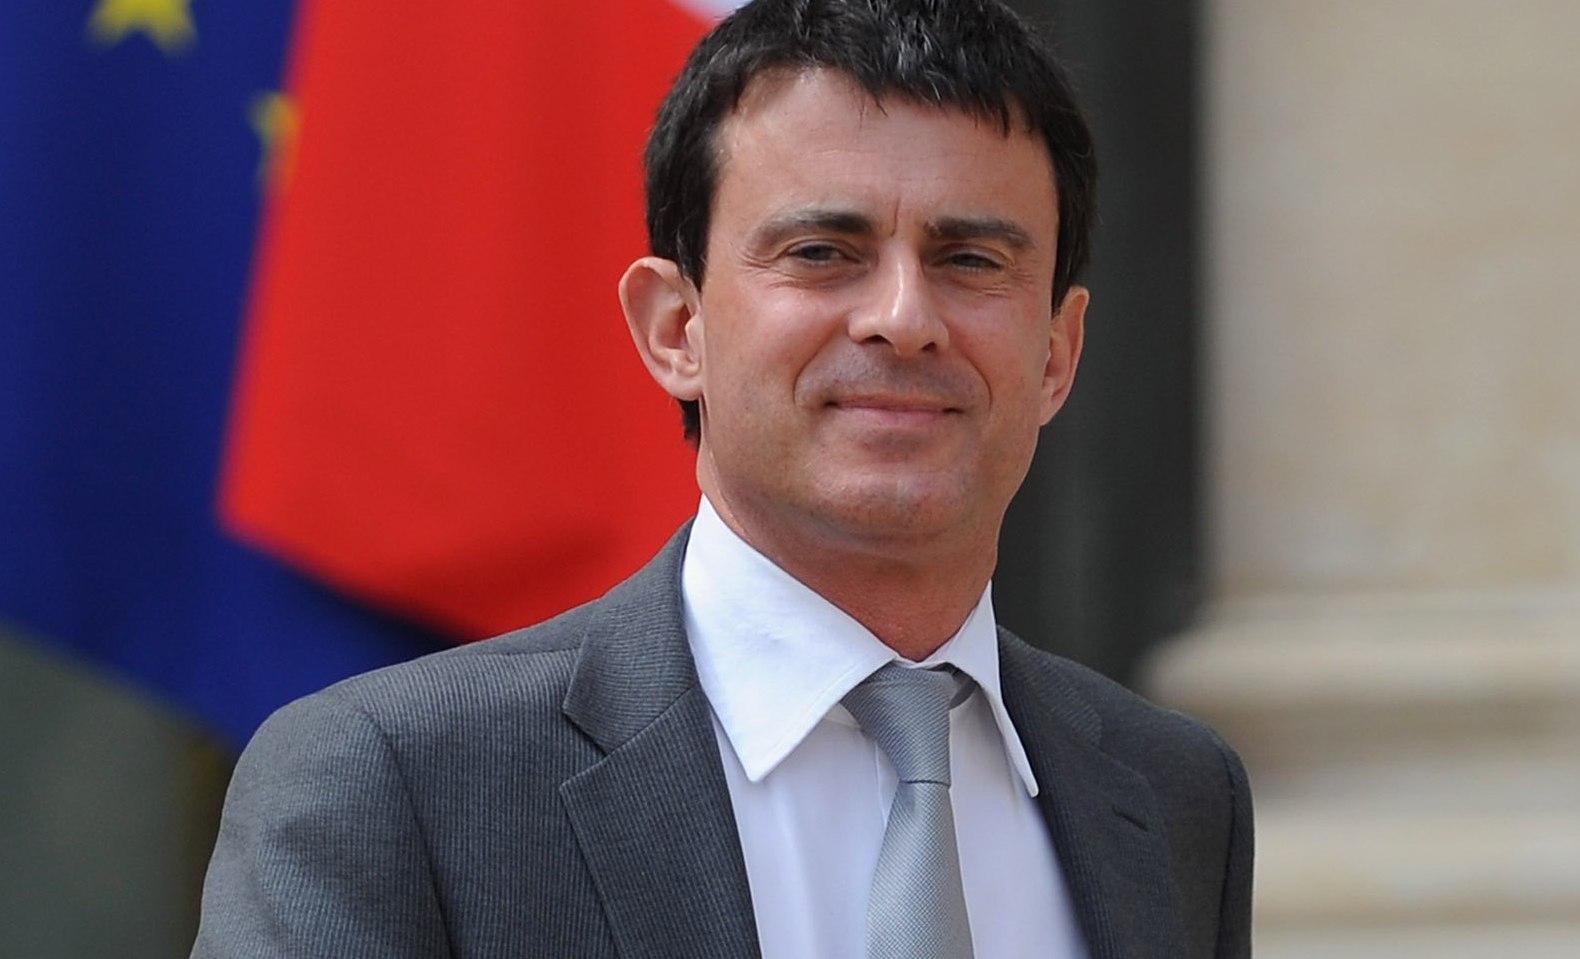 Valls tiene ahora la tarea de formar, de aquí al martes, un "equipo coherente con las orientaciones" definidas por Hollande, señala un comunicado de la presidencia francesa.